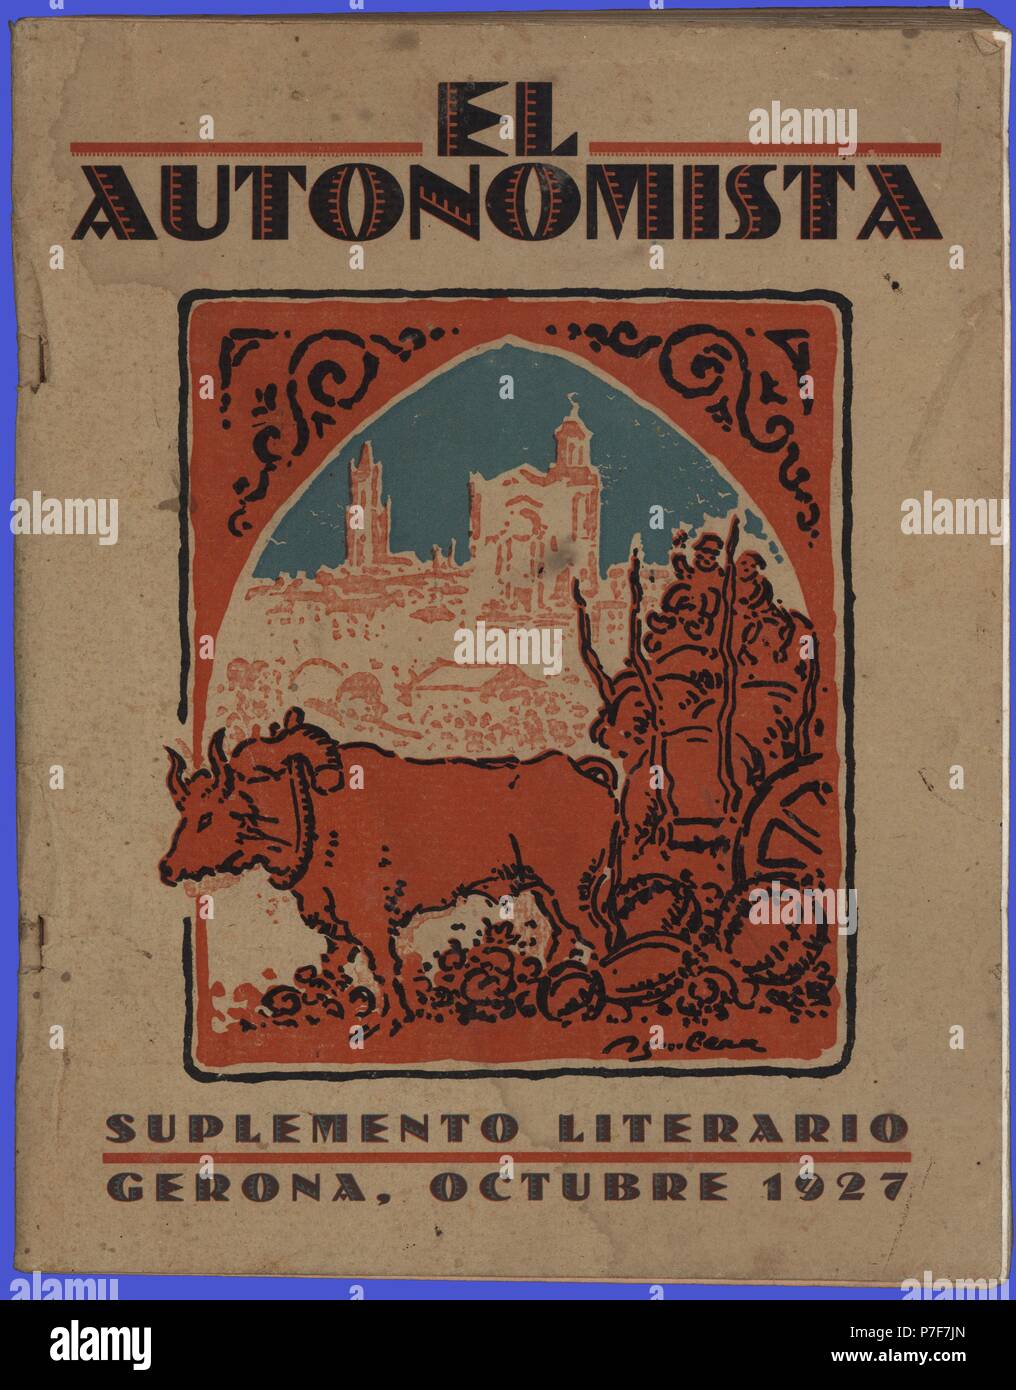 Portada del suplemento literario de la revista El Autonomista, editada en Girona, octubre de 1927. Stock Photo